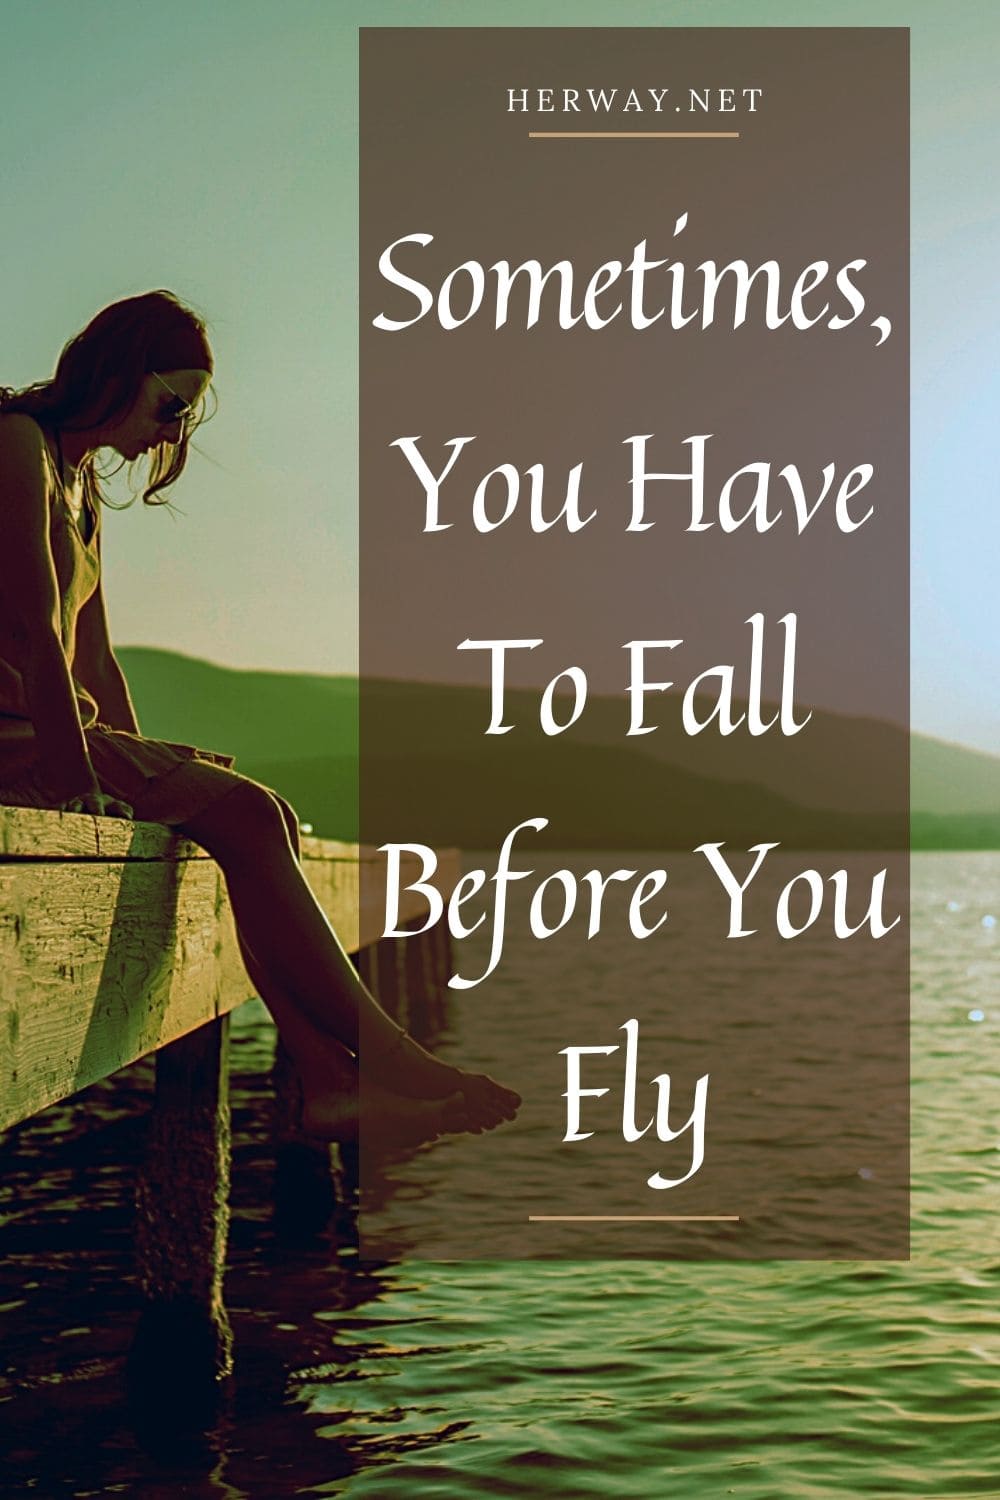 A volte bisogna cadere prima di volare